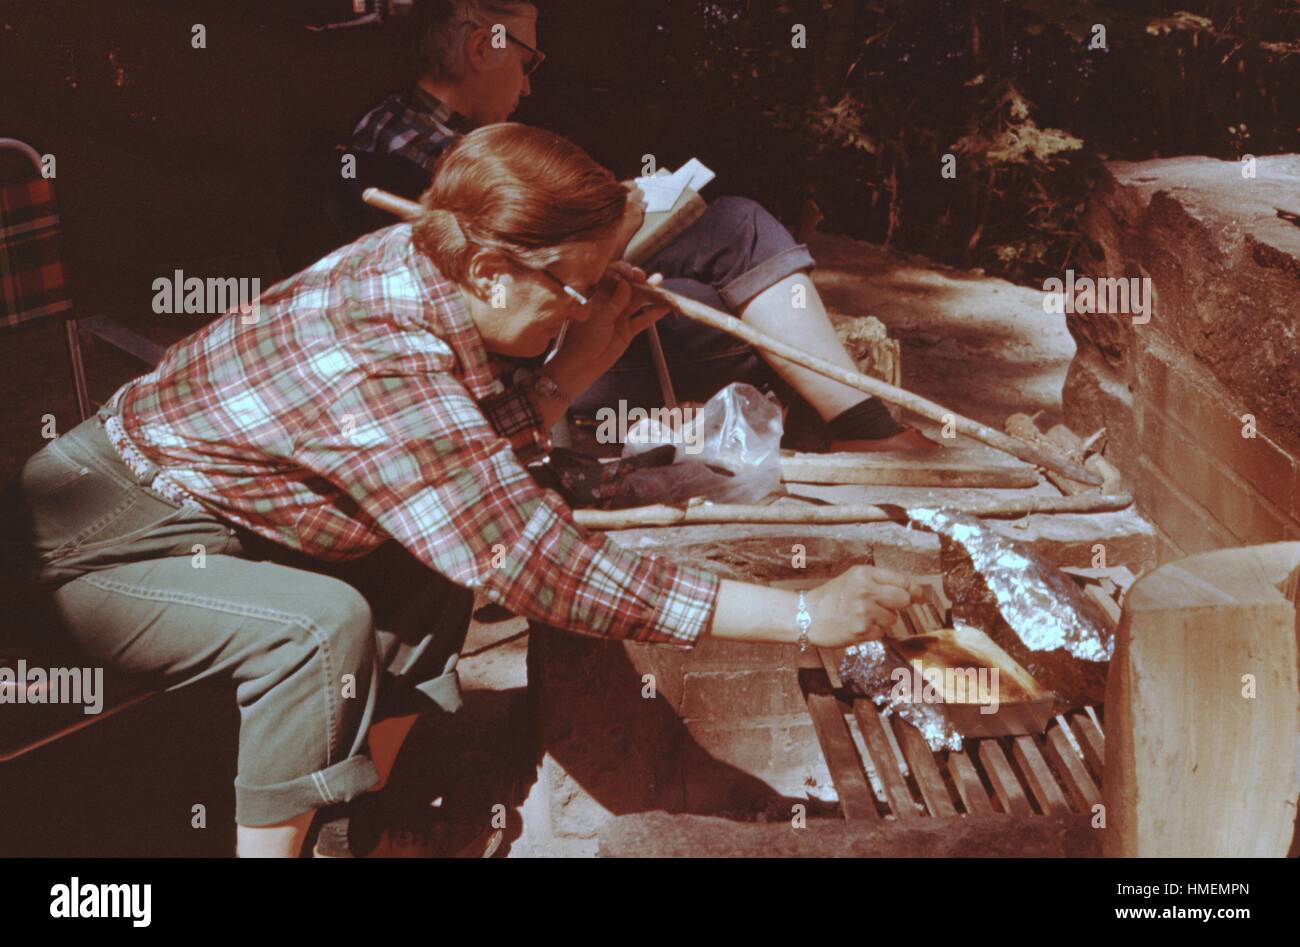 Personne vers un plat de nourriture cuit sur un gril de charbon de bois pendant la cuisson, d'un tenant un bâton, forêt de Maidstone, Vermont, USA, 1955. Crédit photo Smith Collection/Gado/Getty Images. Banque D'Images